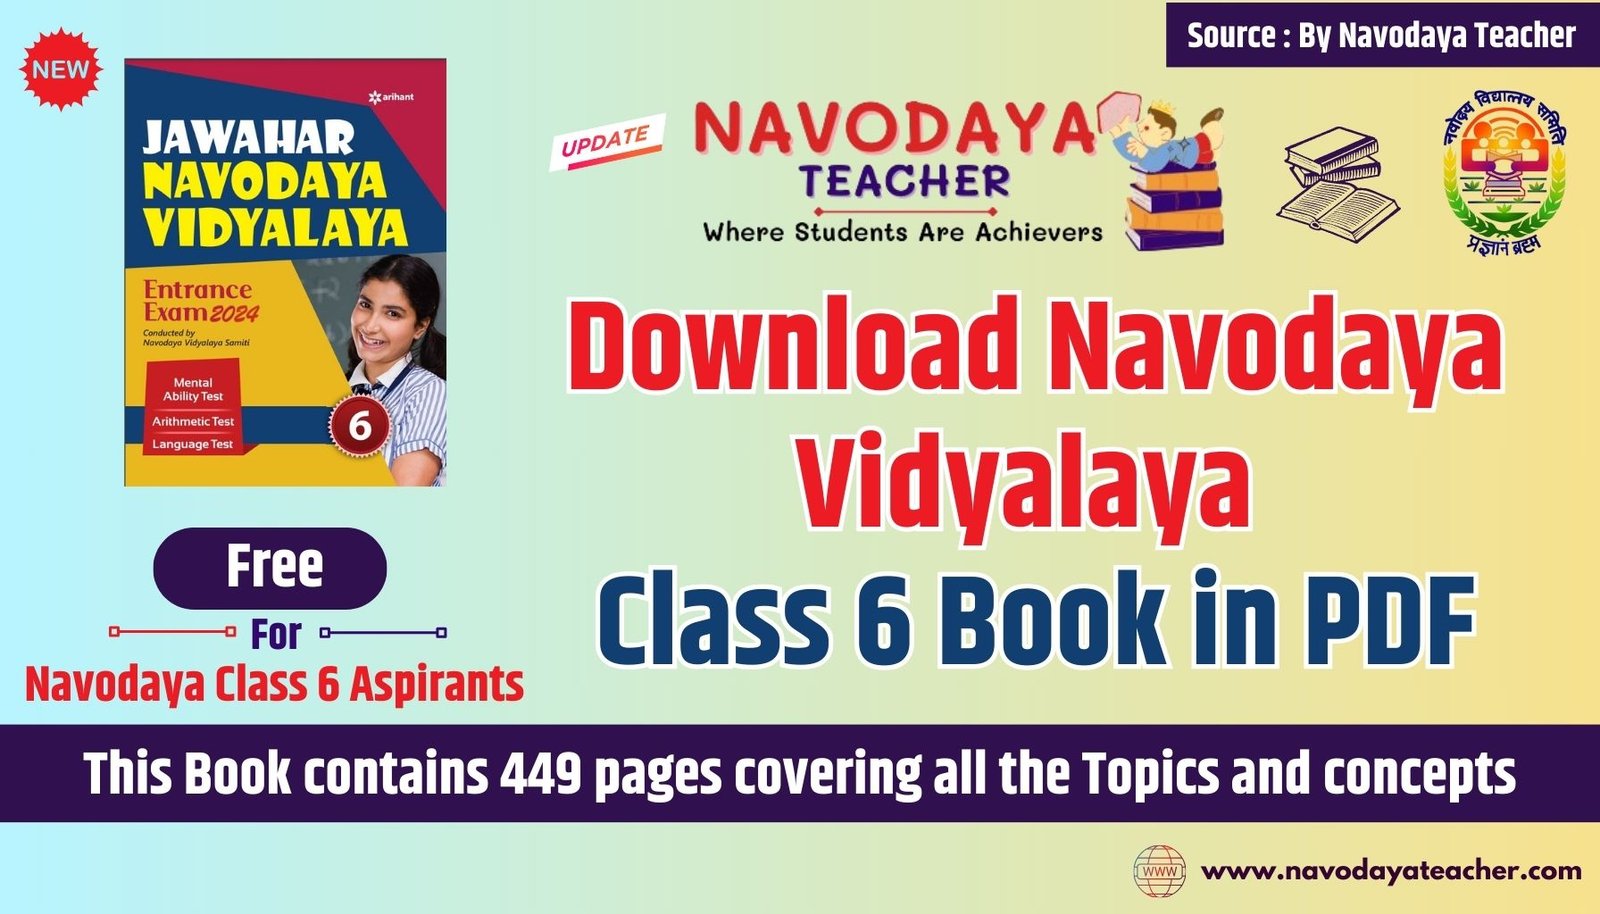 Download Navodaya Vidyalaya Class 6 Free Book in PDF